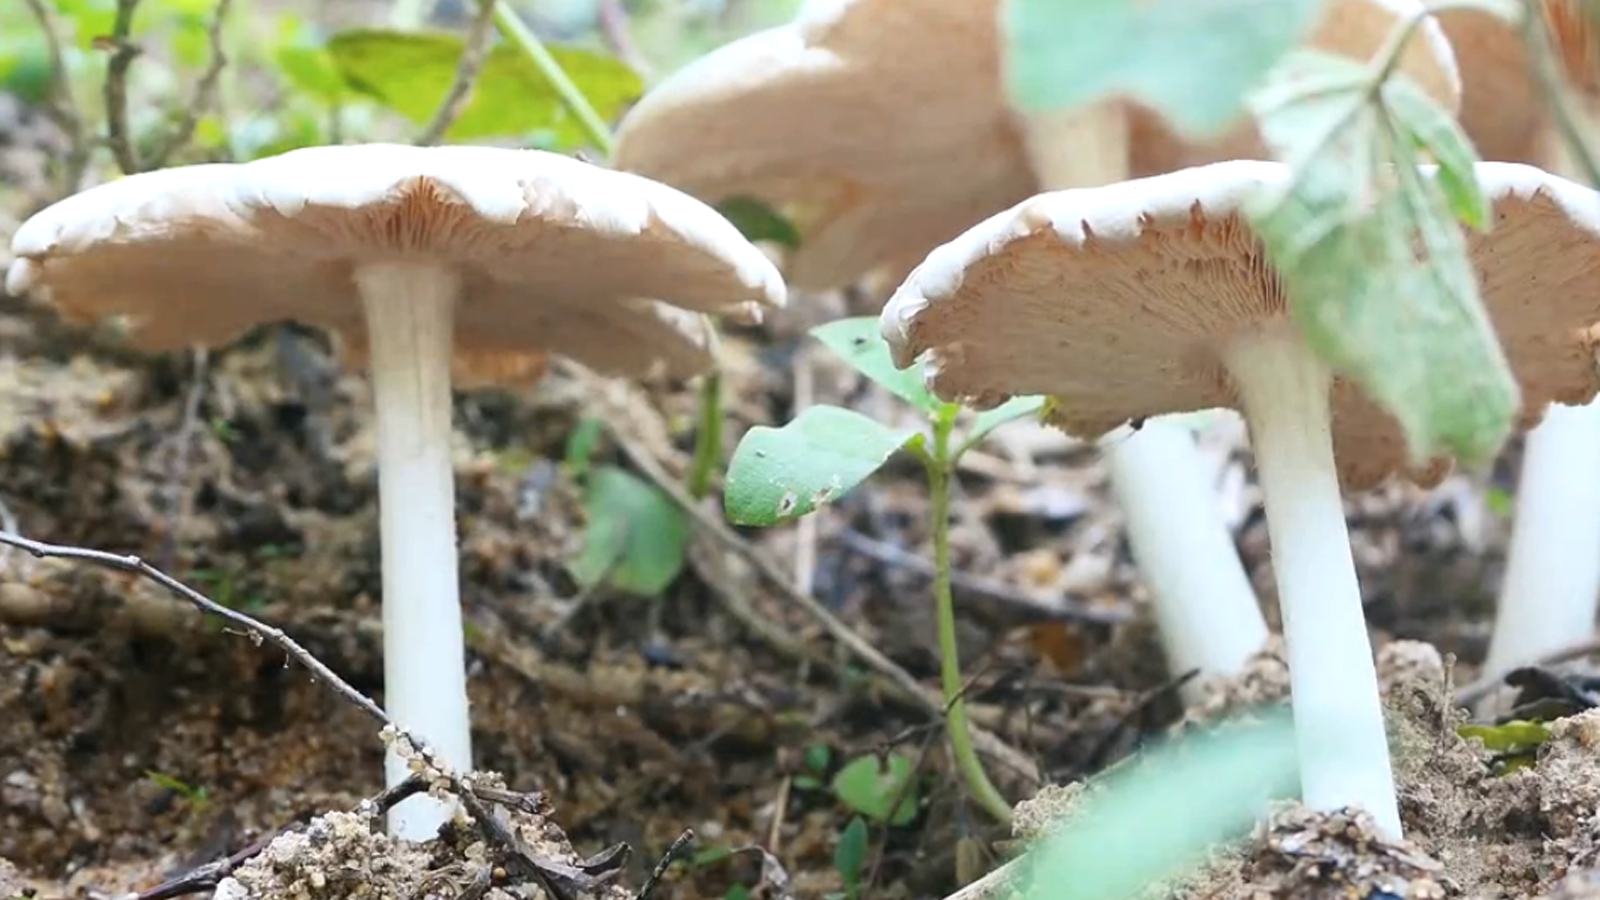 毛窝窝—只有农村连阴天才出现的一种蘑菇,纯野生,吃上它完全靠运气